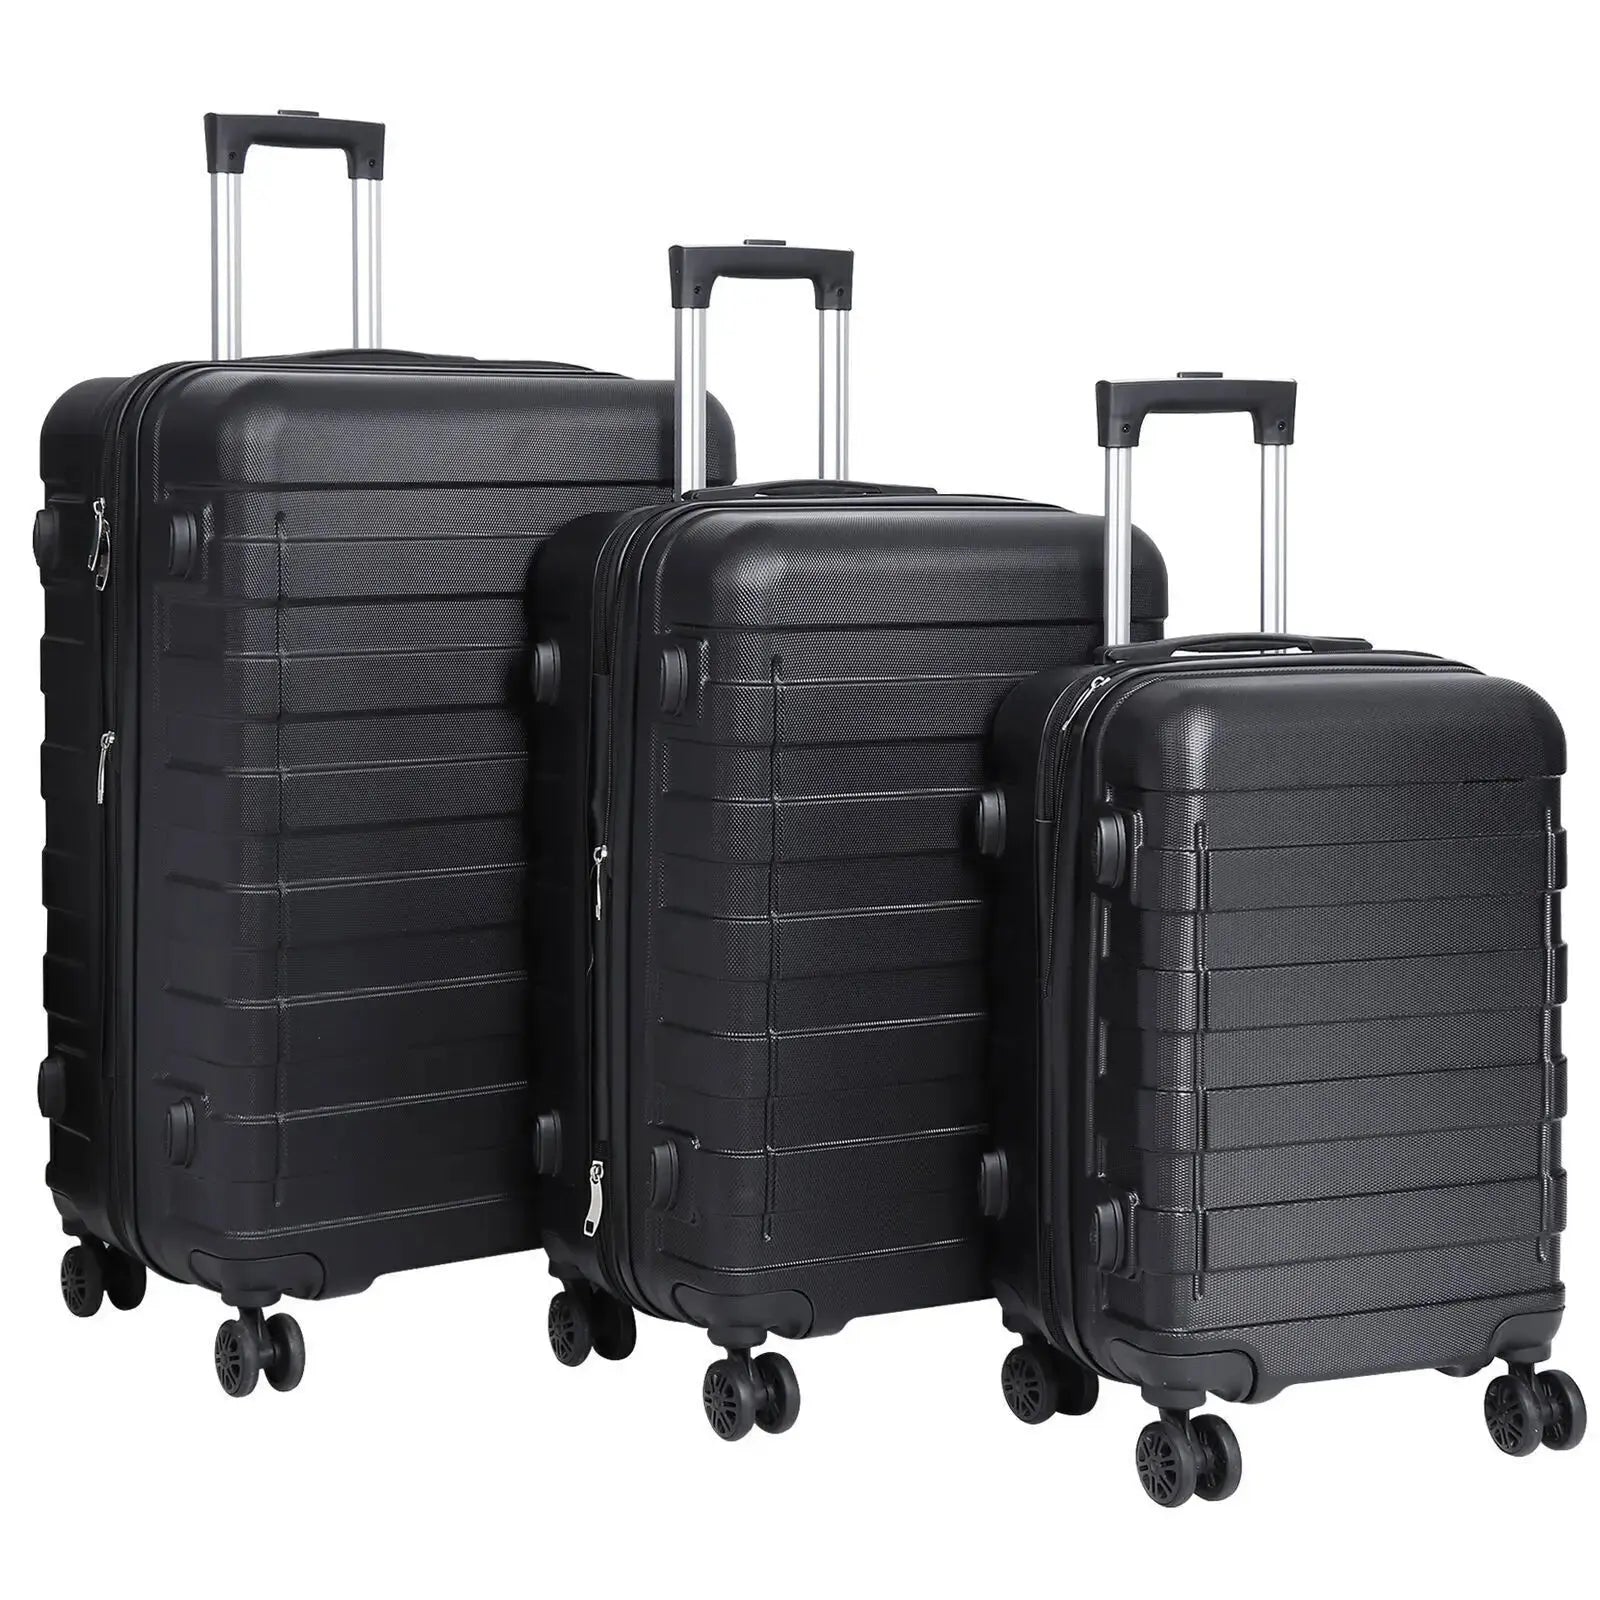 JetSet Elite Luggage Set